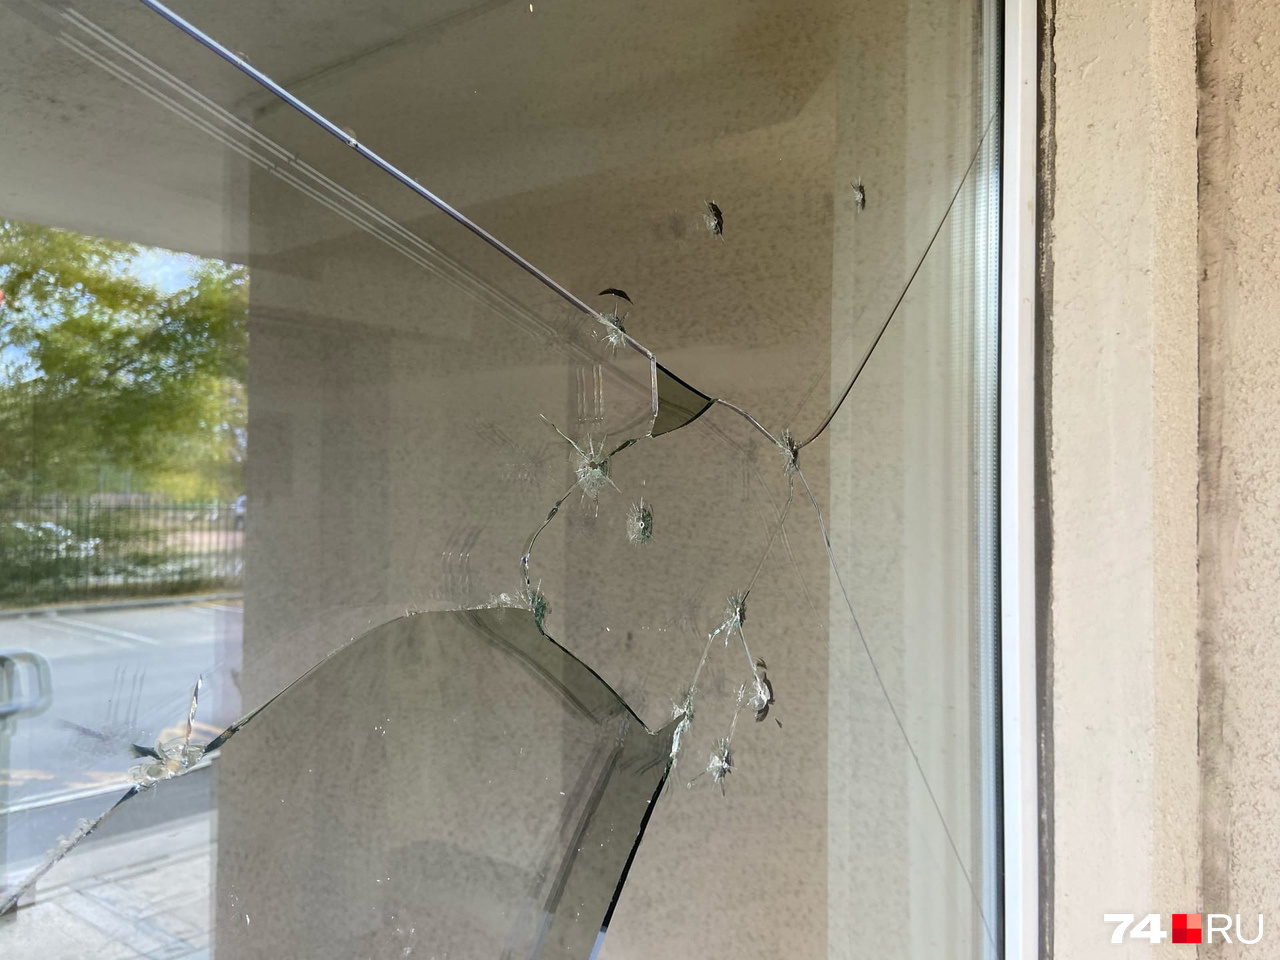 Судя по стеклу, стрелки выпустили несколько пуль